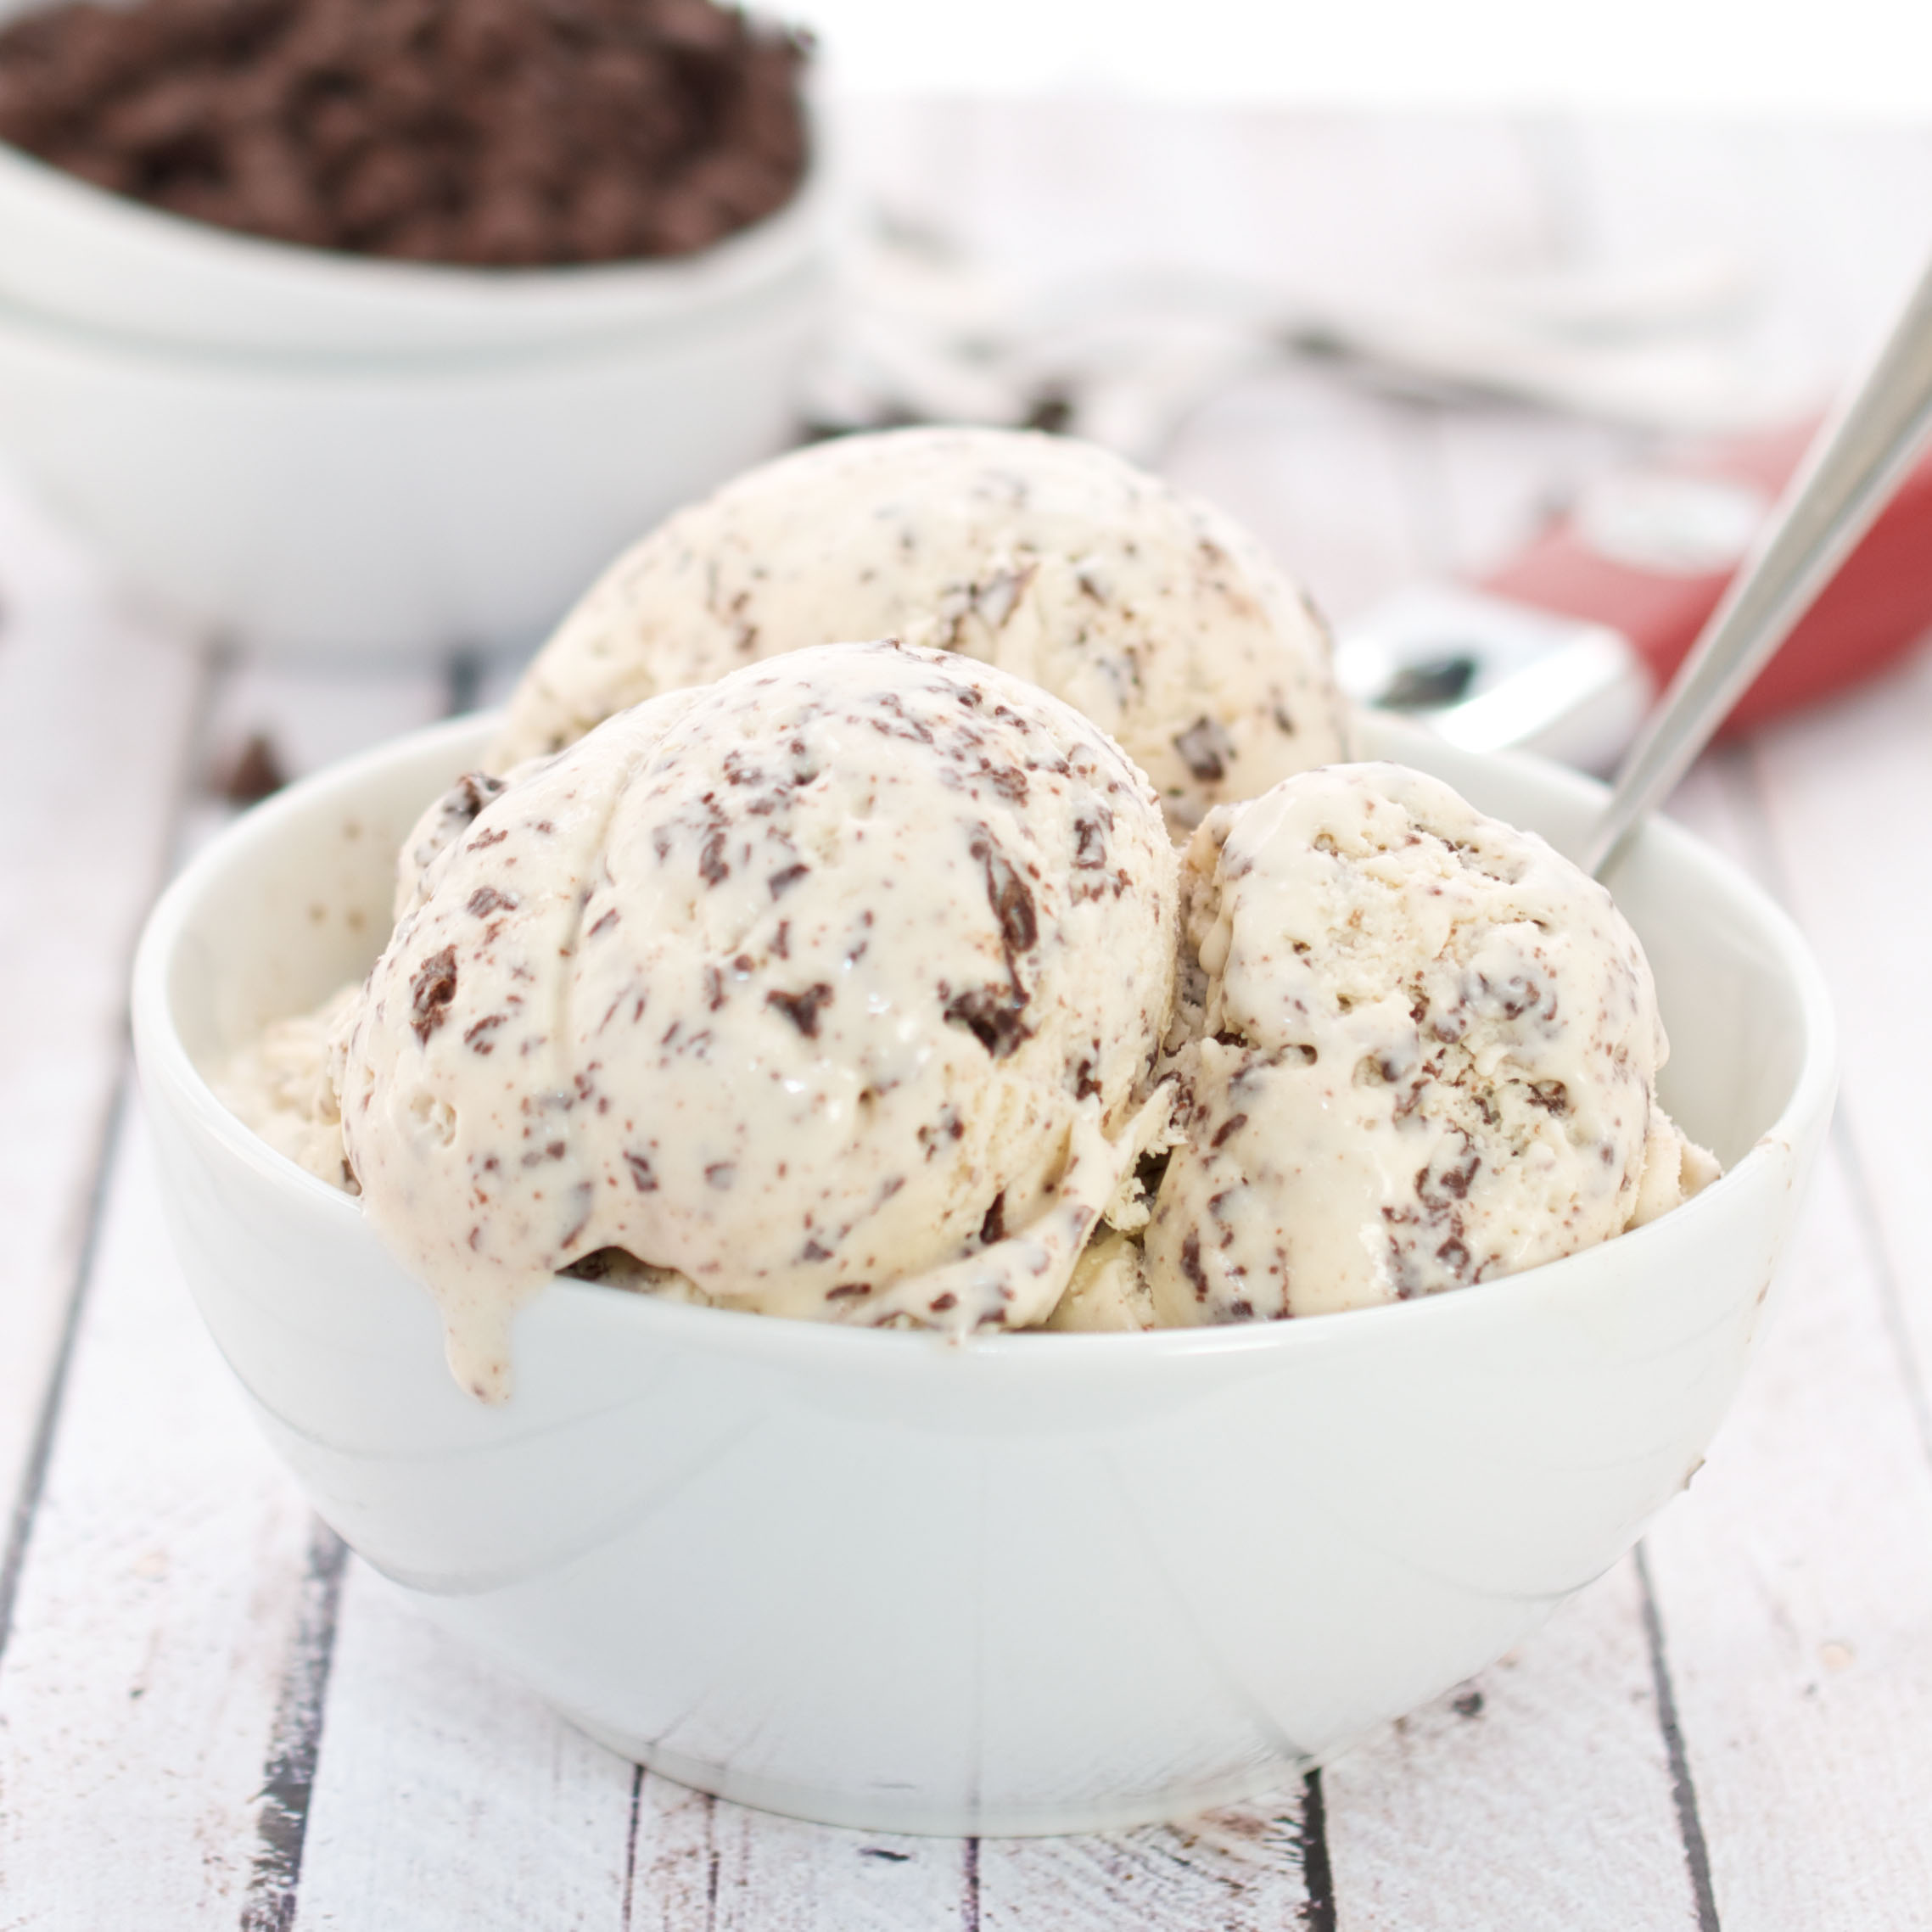 Καλοκαιρινή συνταγή: Σπιτικό παγωτό με κομμάτια σοκολάτας!